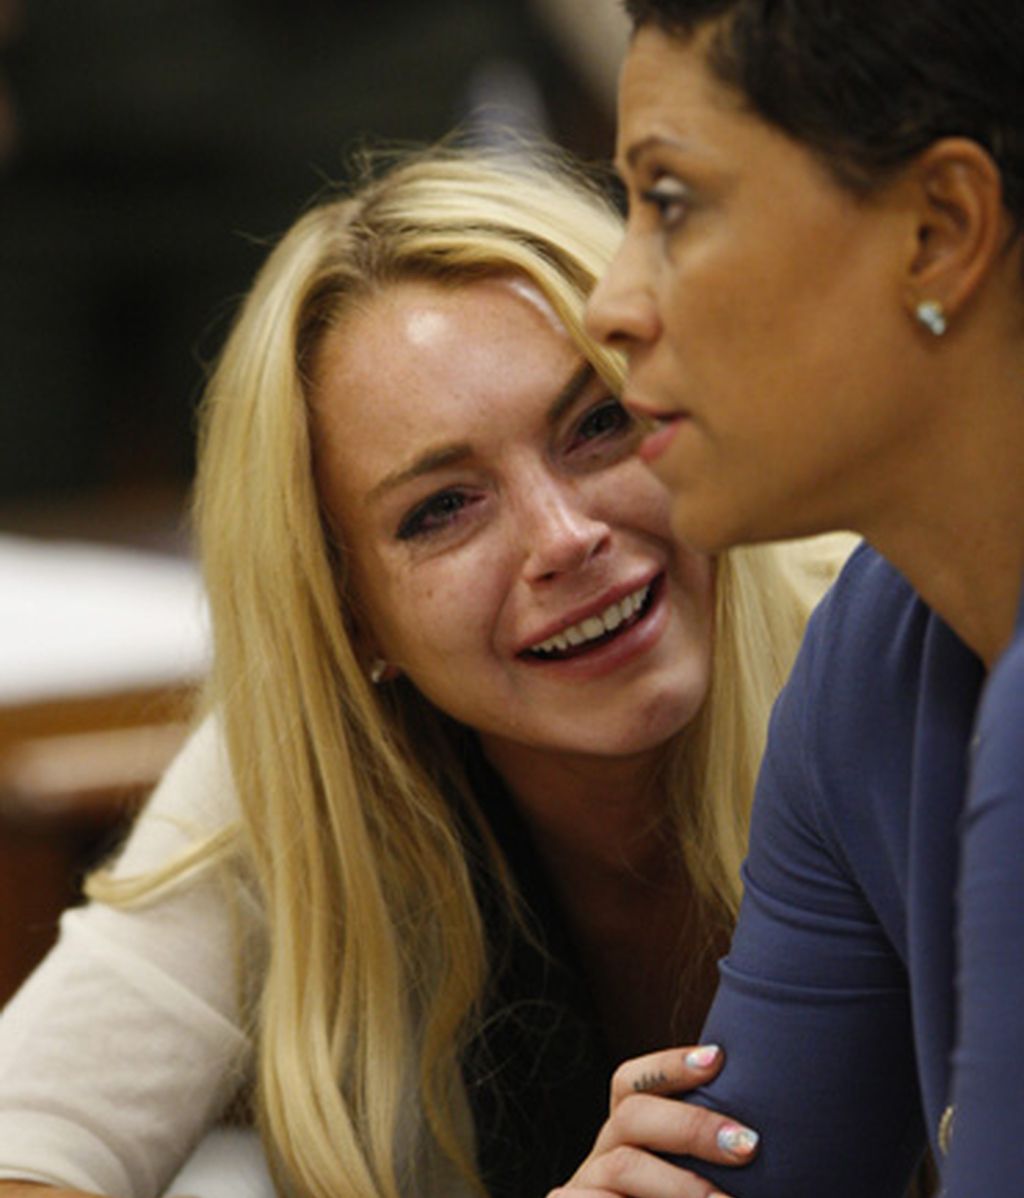 La reacción de Lindsay Lohan al ser condenada a prisión